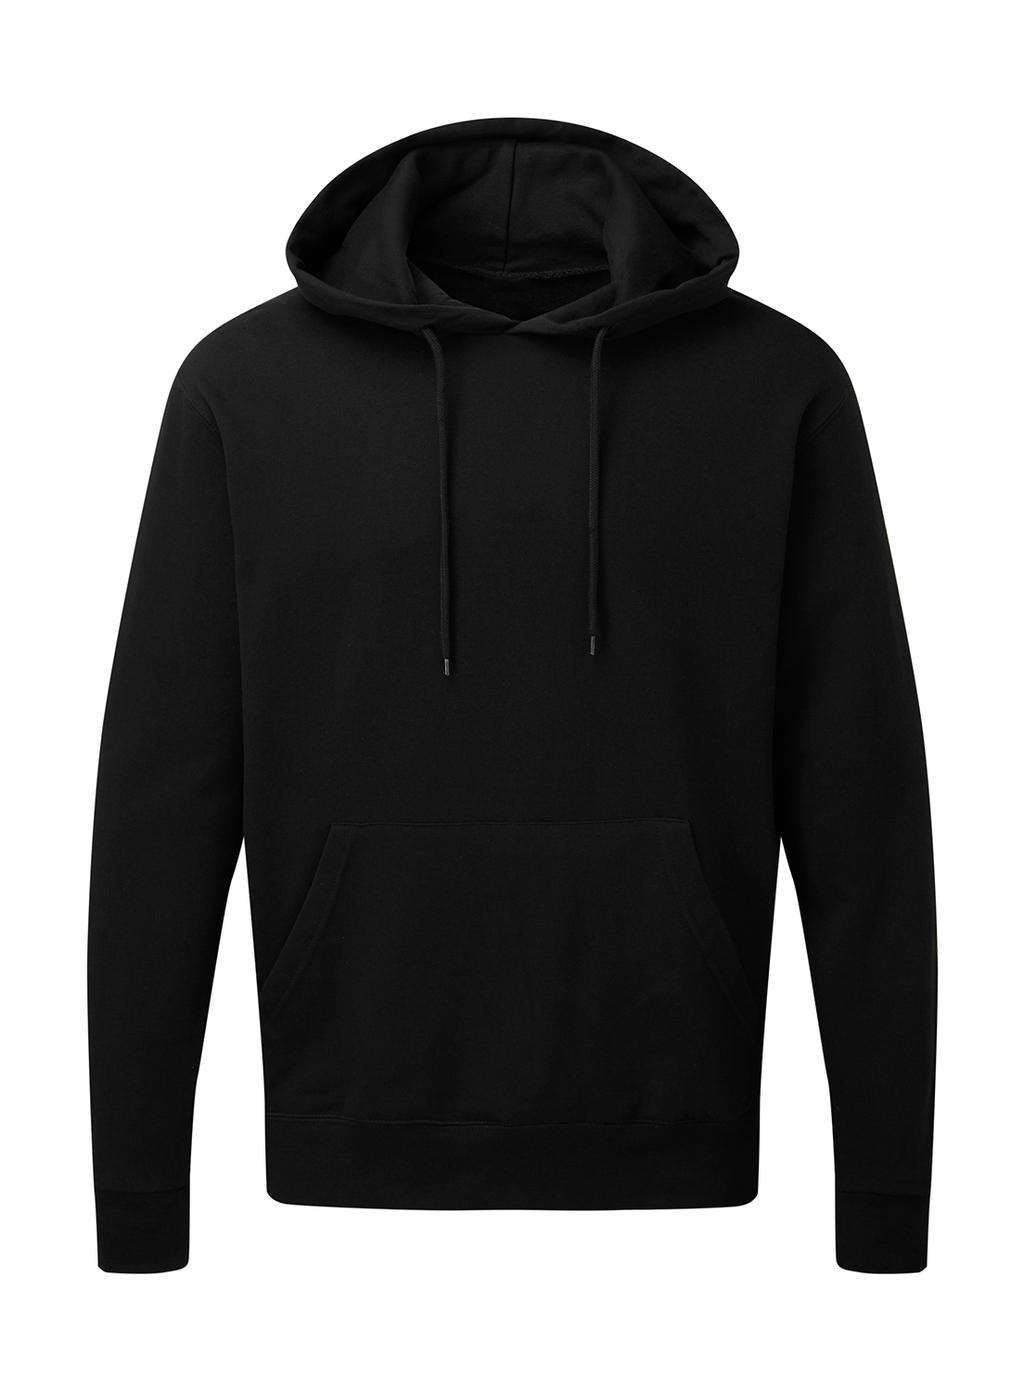  Mens Hooded Sweatshirt in Farbe Dark Black